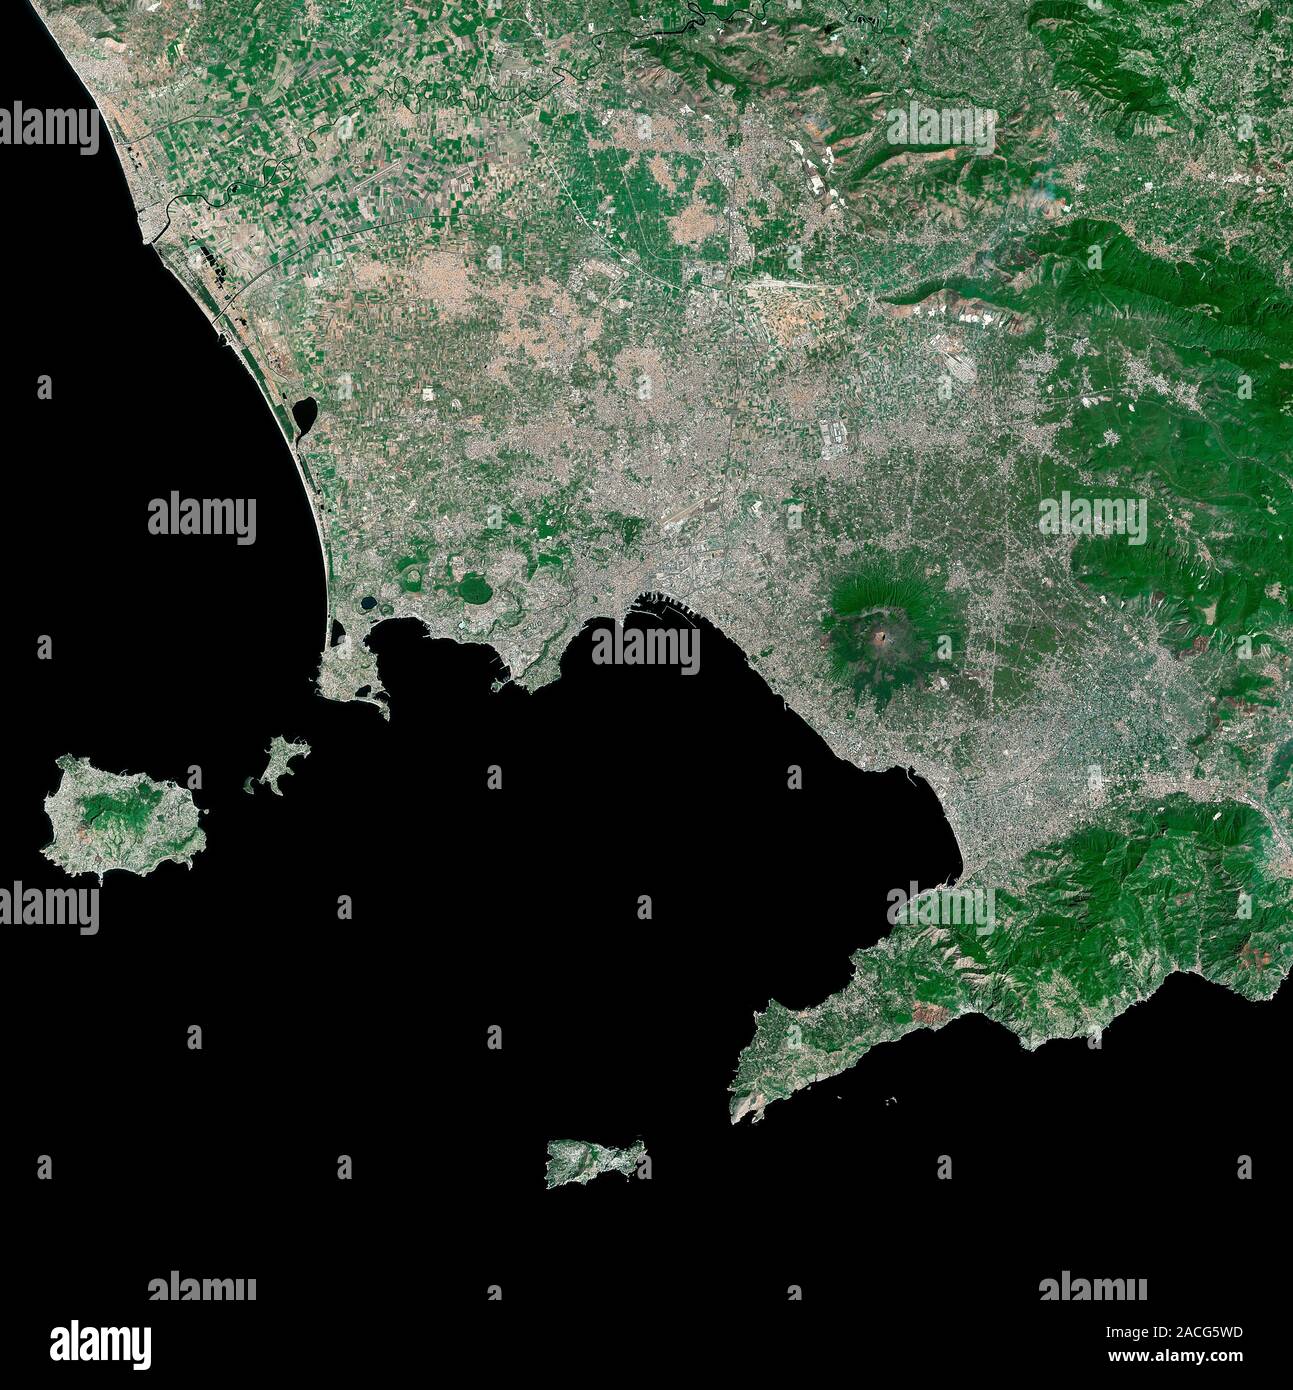 Golfo di Napoli, Italia. Immagine satellitare del Golfo di Napoli e sulla  costa mediterranea dell'Italia. Il Nord è in alto. La baia è delimitata a  nord dal Foto stock - Alamy